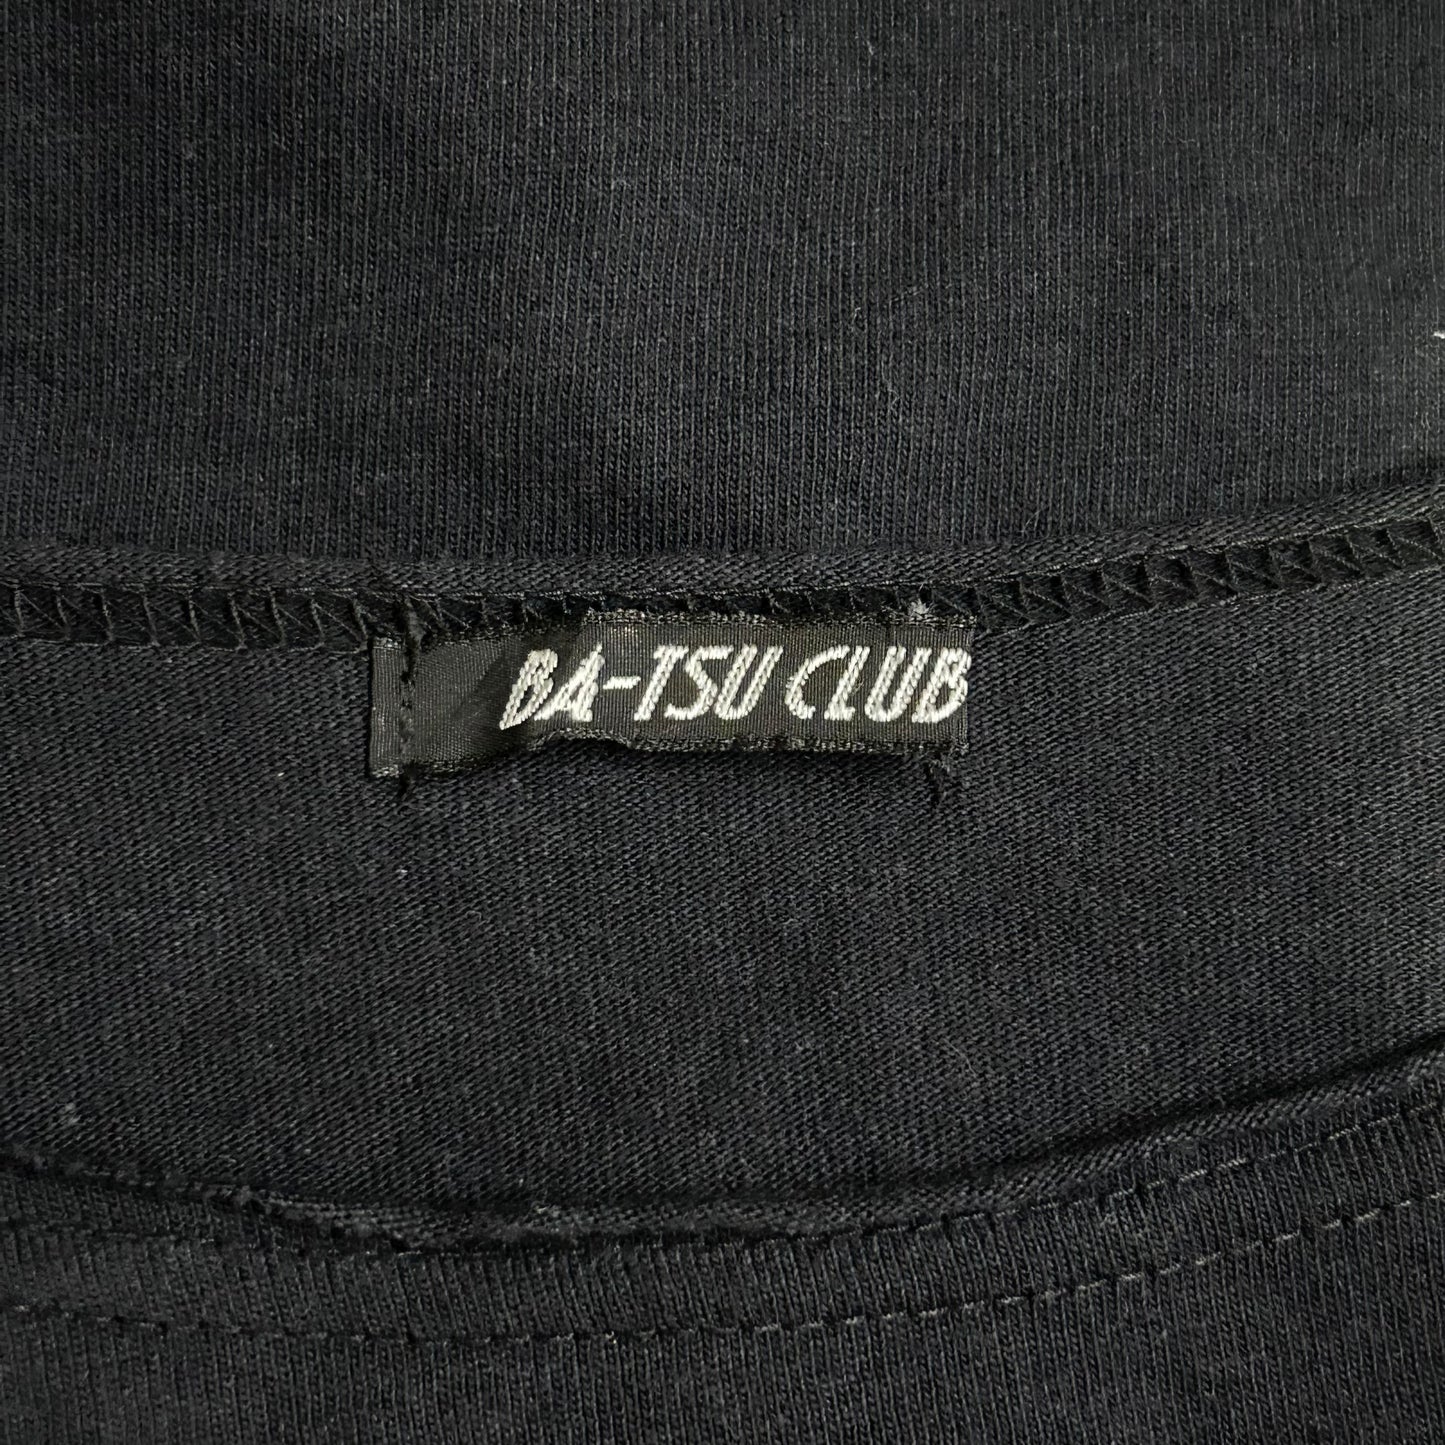 Batsu Club antisocial top